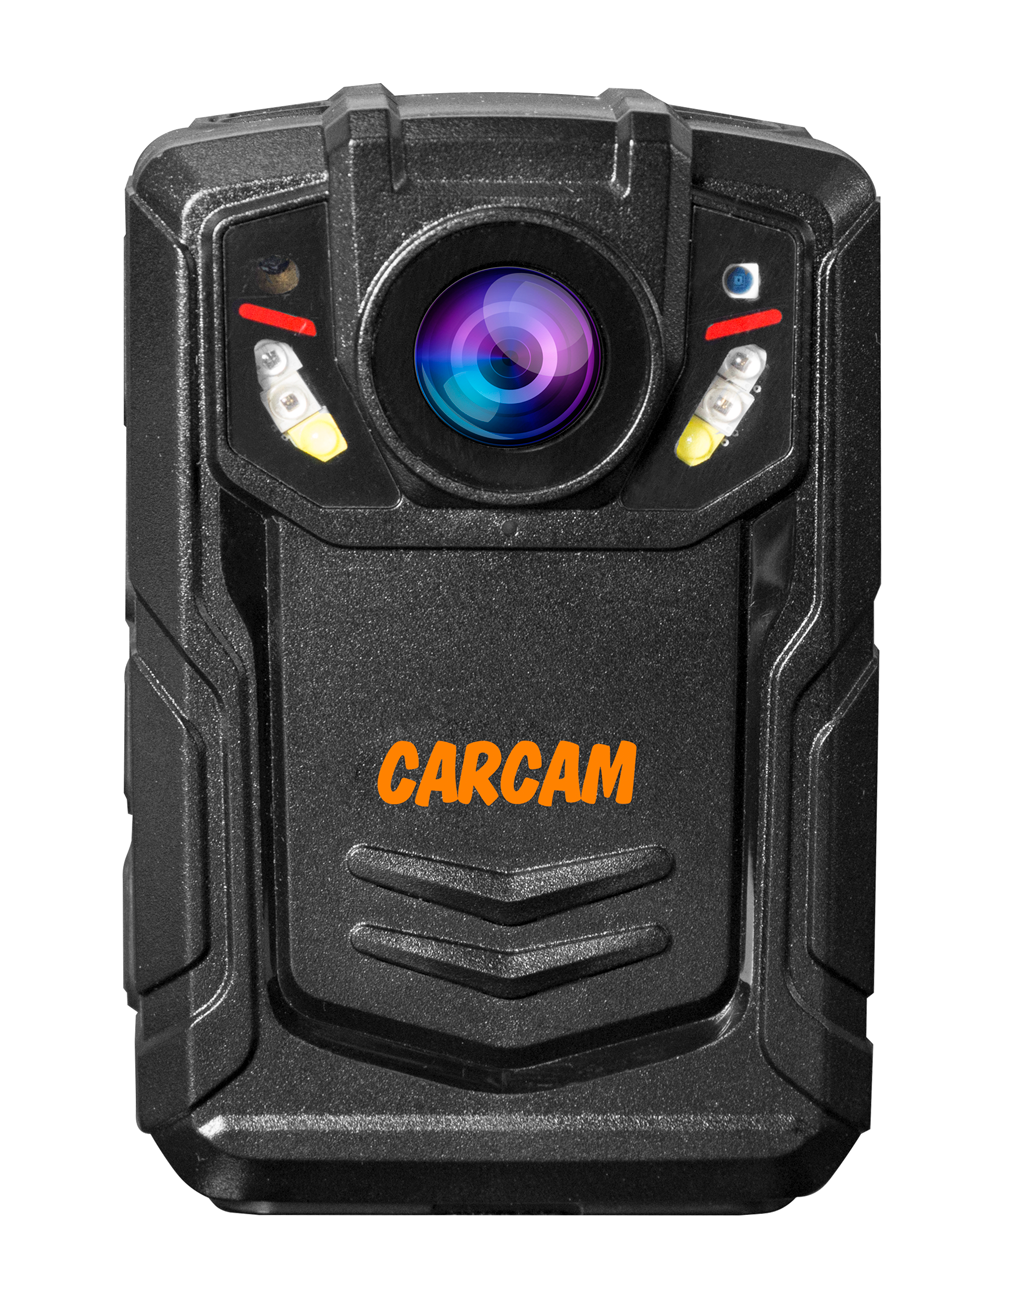 Персональный Quad HD видеорегистратор  CARCAM COMBAT 2S/4G 128GB персональный видеорегистратор carcam combat 2s pro 32gb